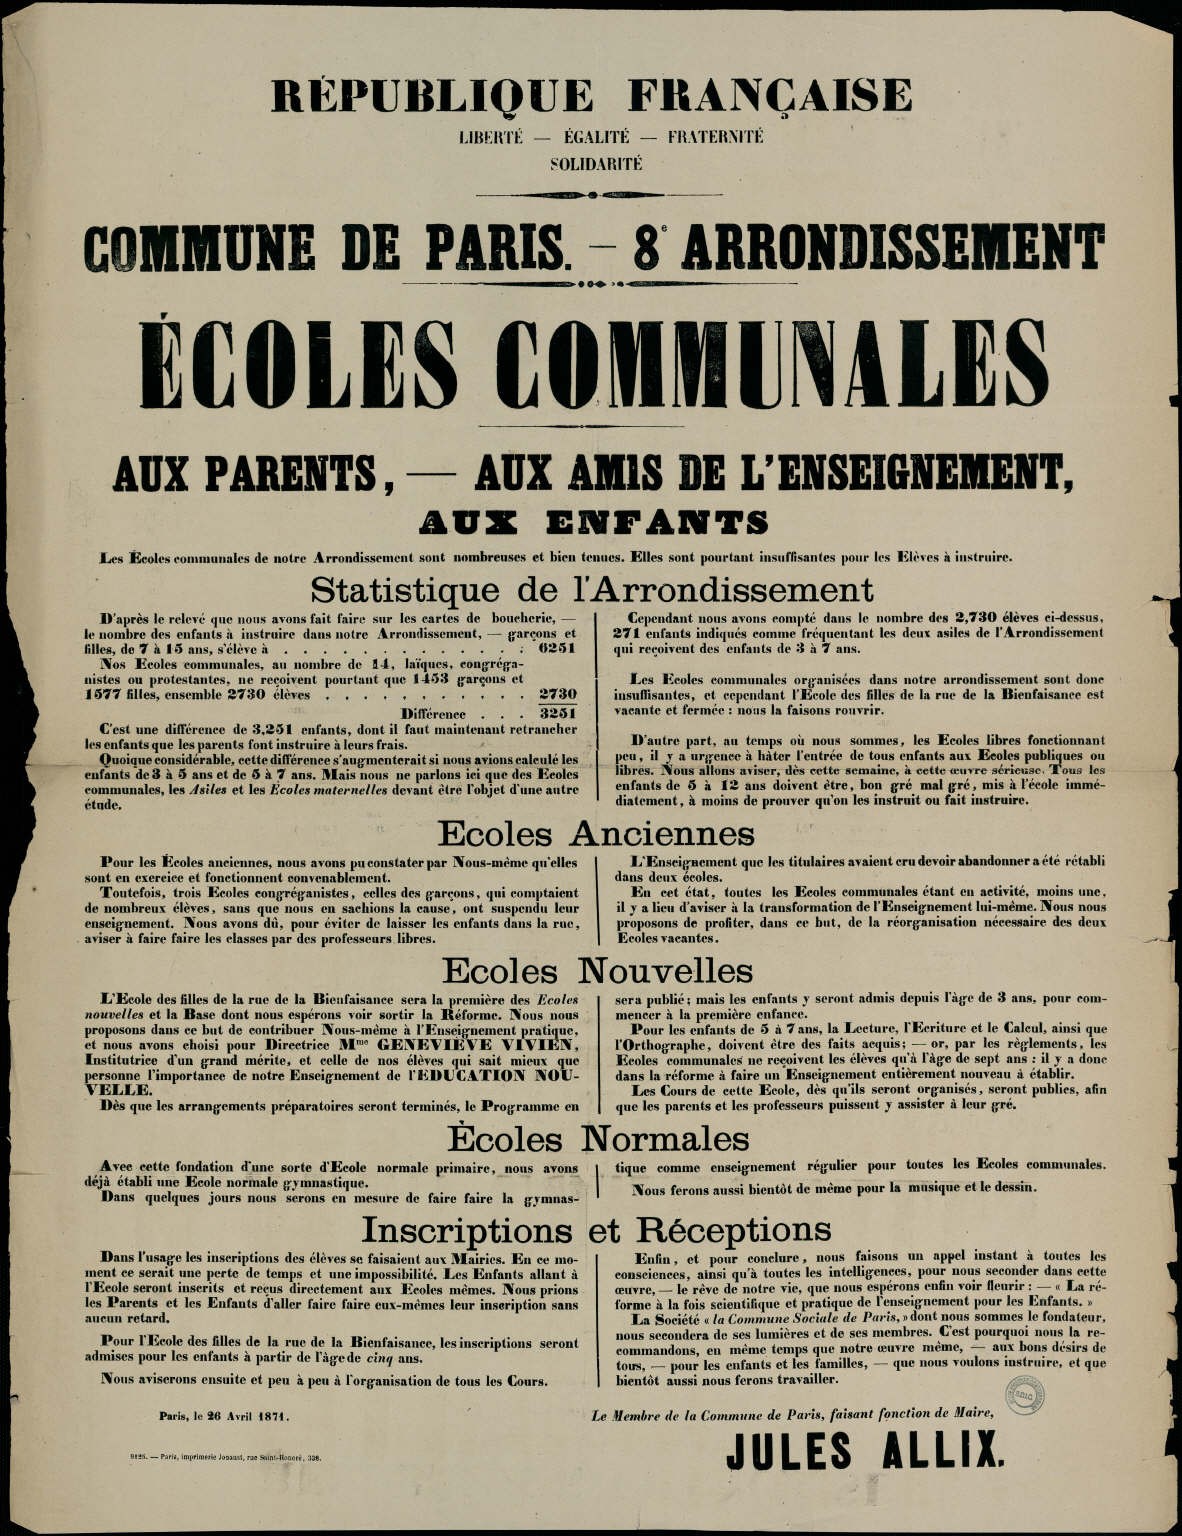 Affiche de la Commune de Paris, 26 avril 1871, Paris VIIIe, signée Jules Allix